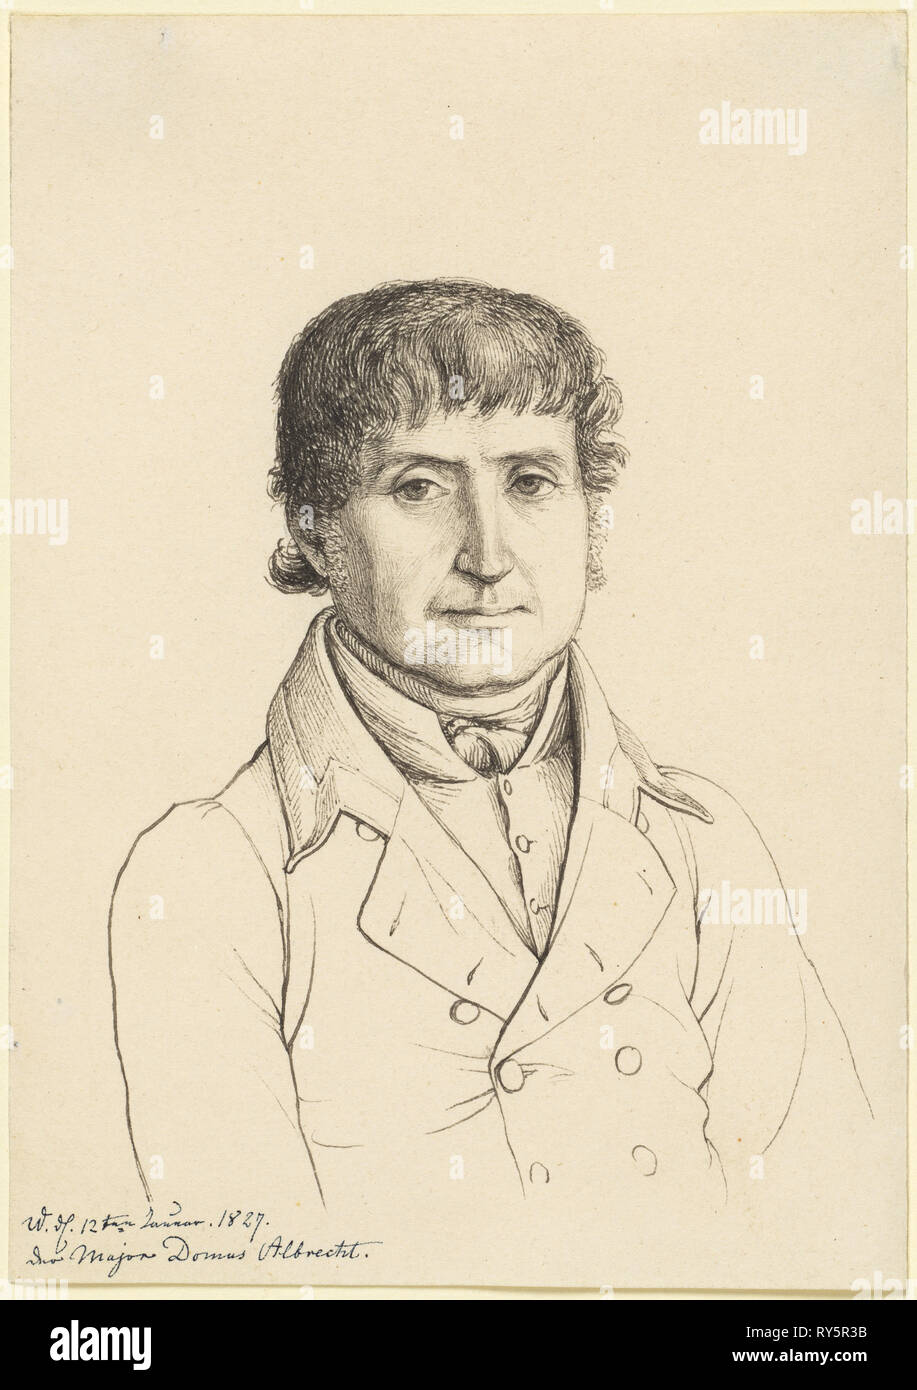 Majordomo Albrecht, 1827. Gerhard Wilhelm von Reutern (German, 1794-1865). Pen and gray and black ink; sheet: 18.1 x 12.8 cm (7 1/8 x 5 1/16 in Stock Photo